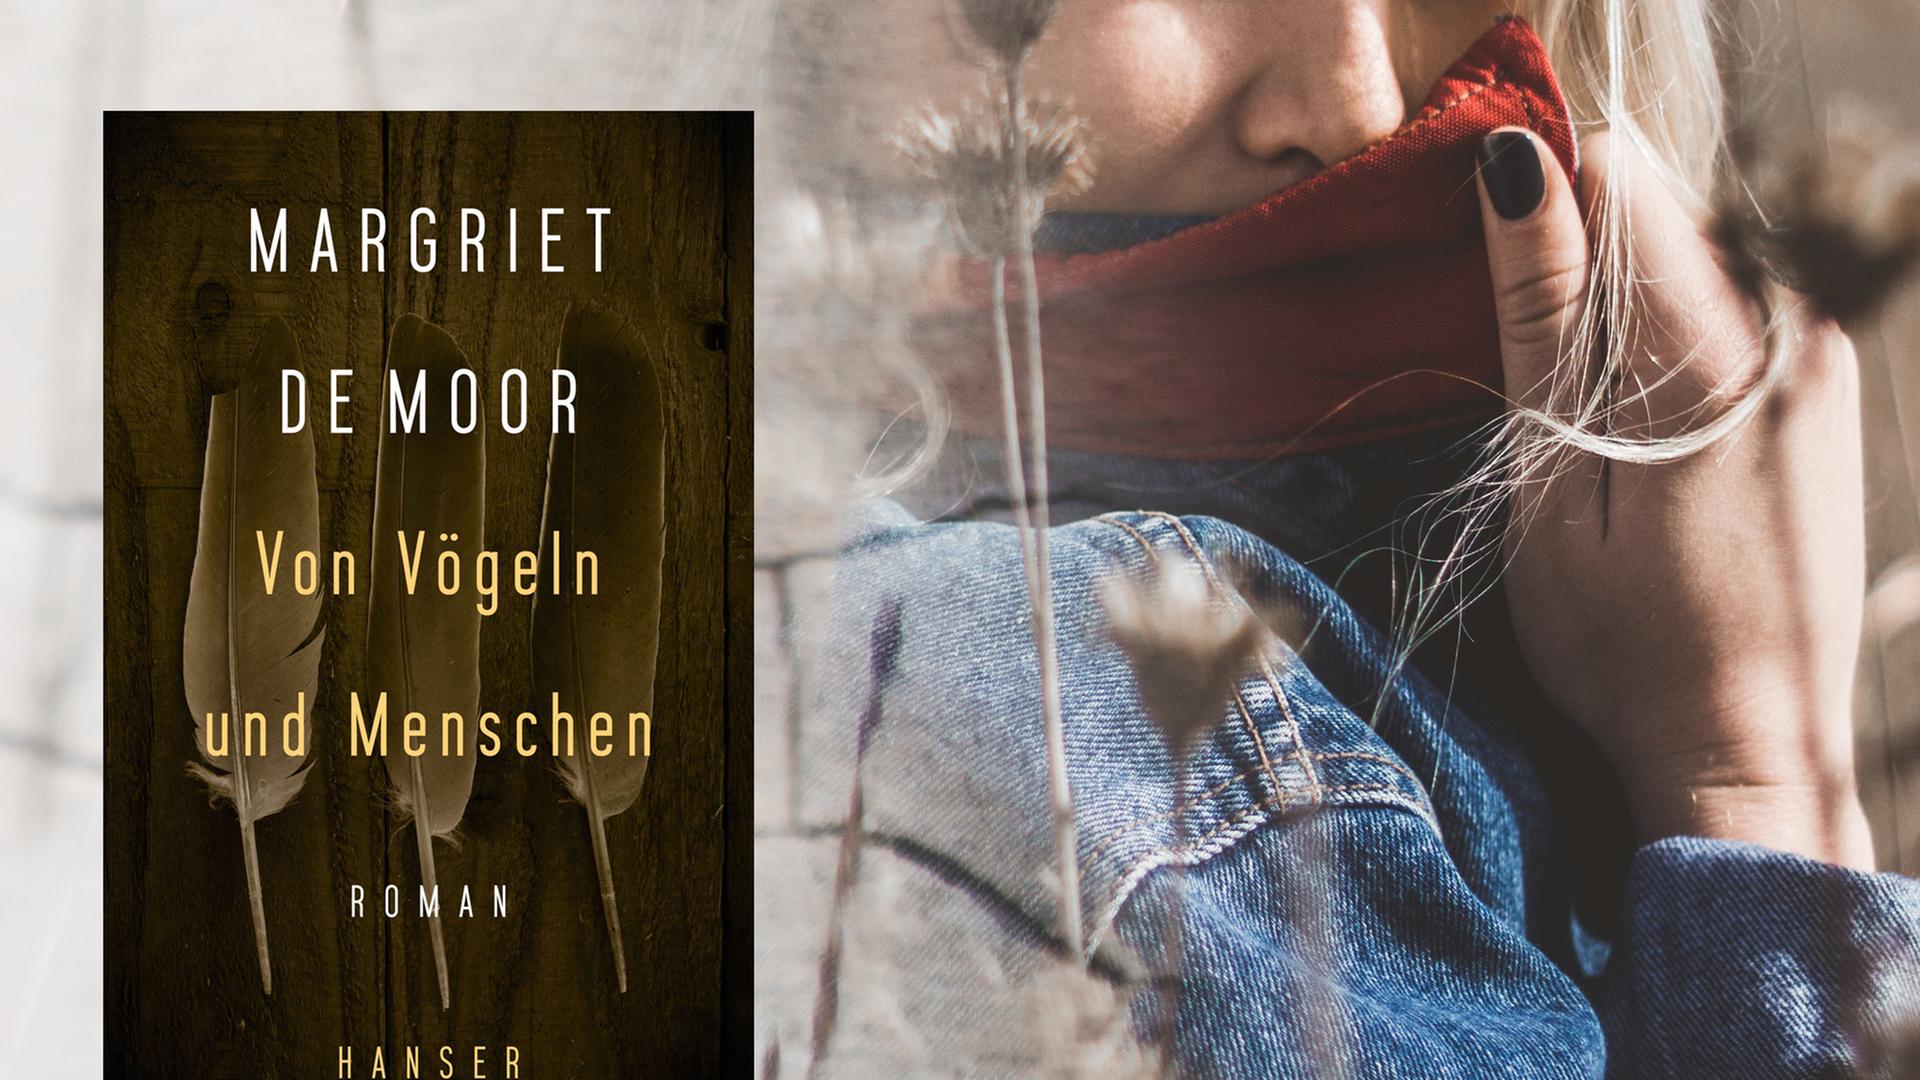 Cover von Margriet De Moors Roman "Von Vögeln und Menschen", im Hintergrund ist eine junge Frau zu sehen.